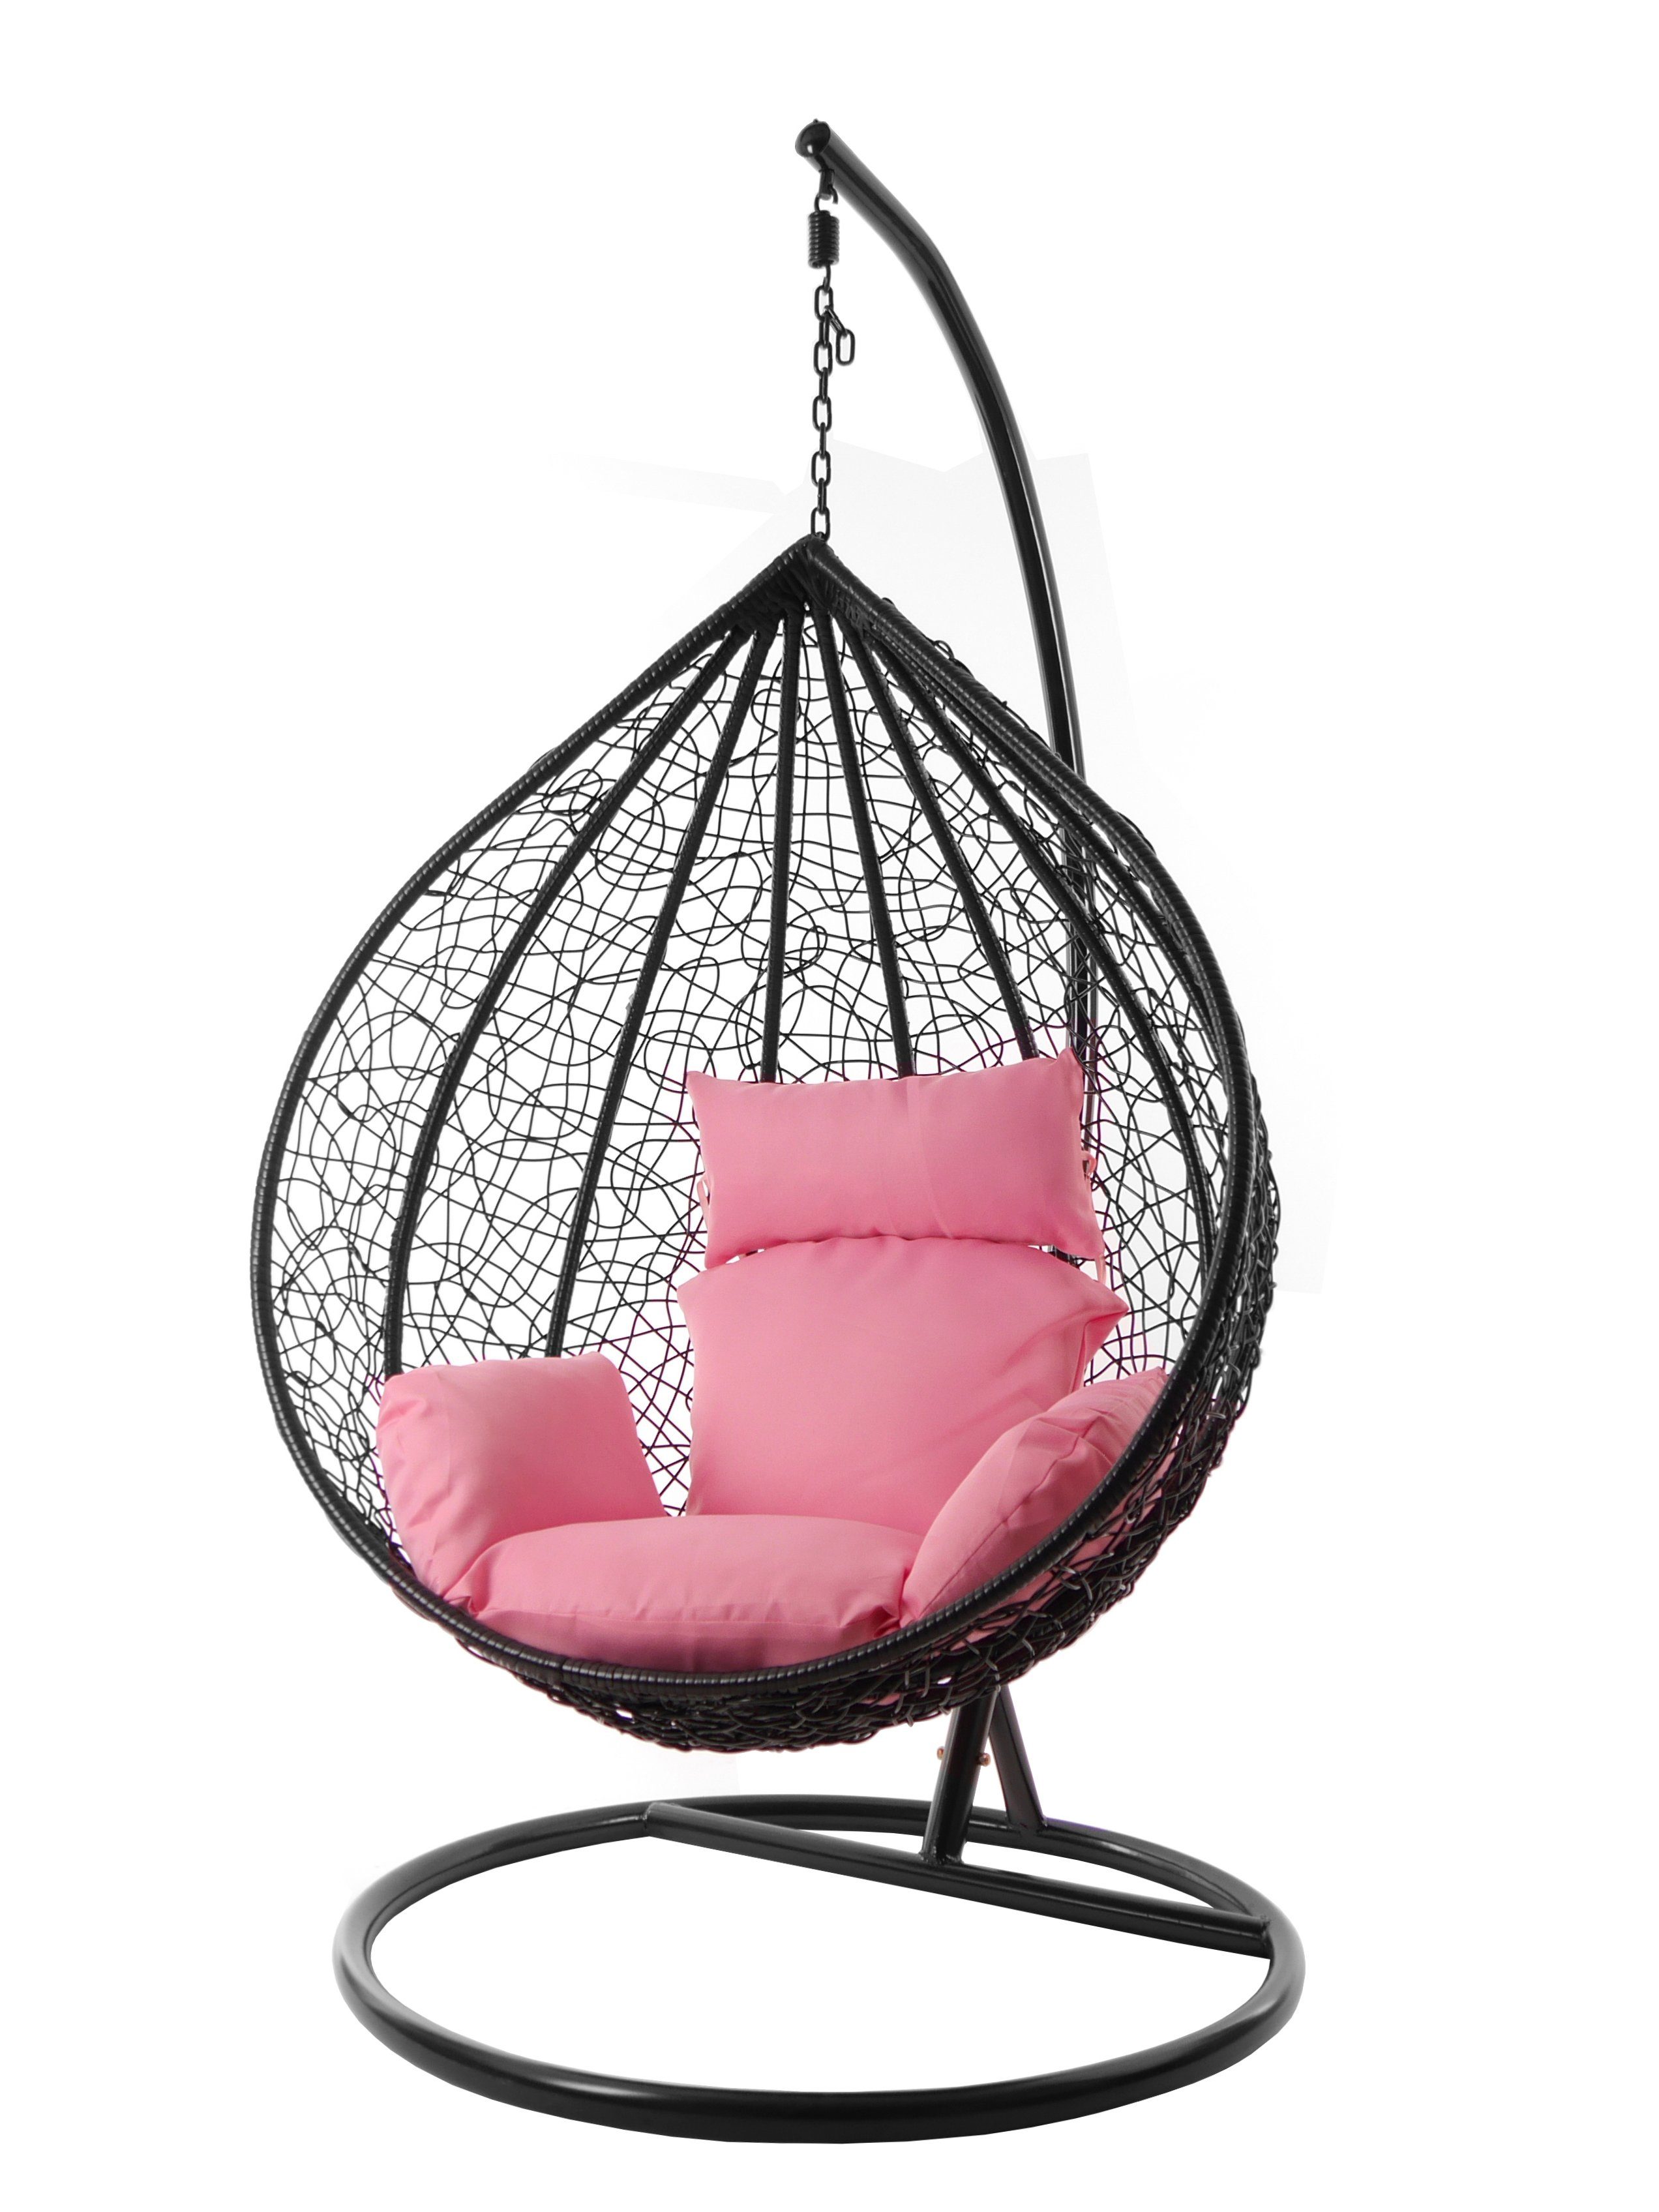 Farben Chair, MANACOR Kissen Swing Hängesessel verschiedene und lemonade) inklusive, edel, XXL KIDEO schwarz, rosa Hängesessel (3002 Nest-Kissen, Gestell